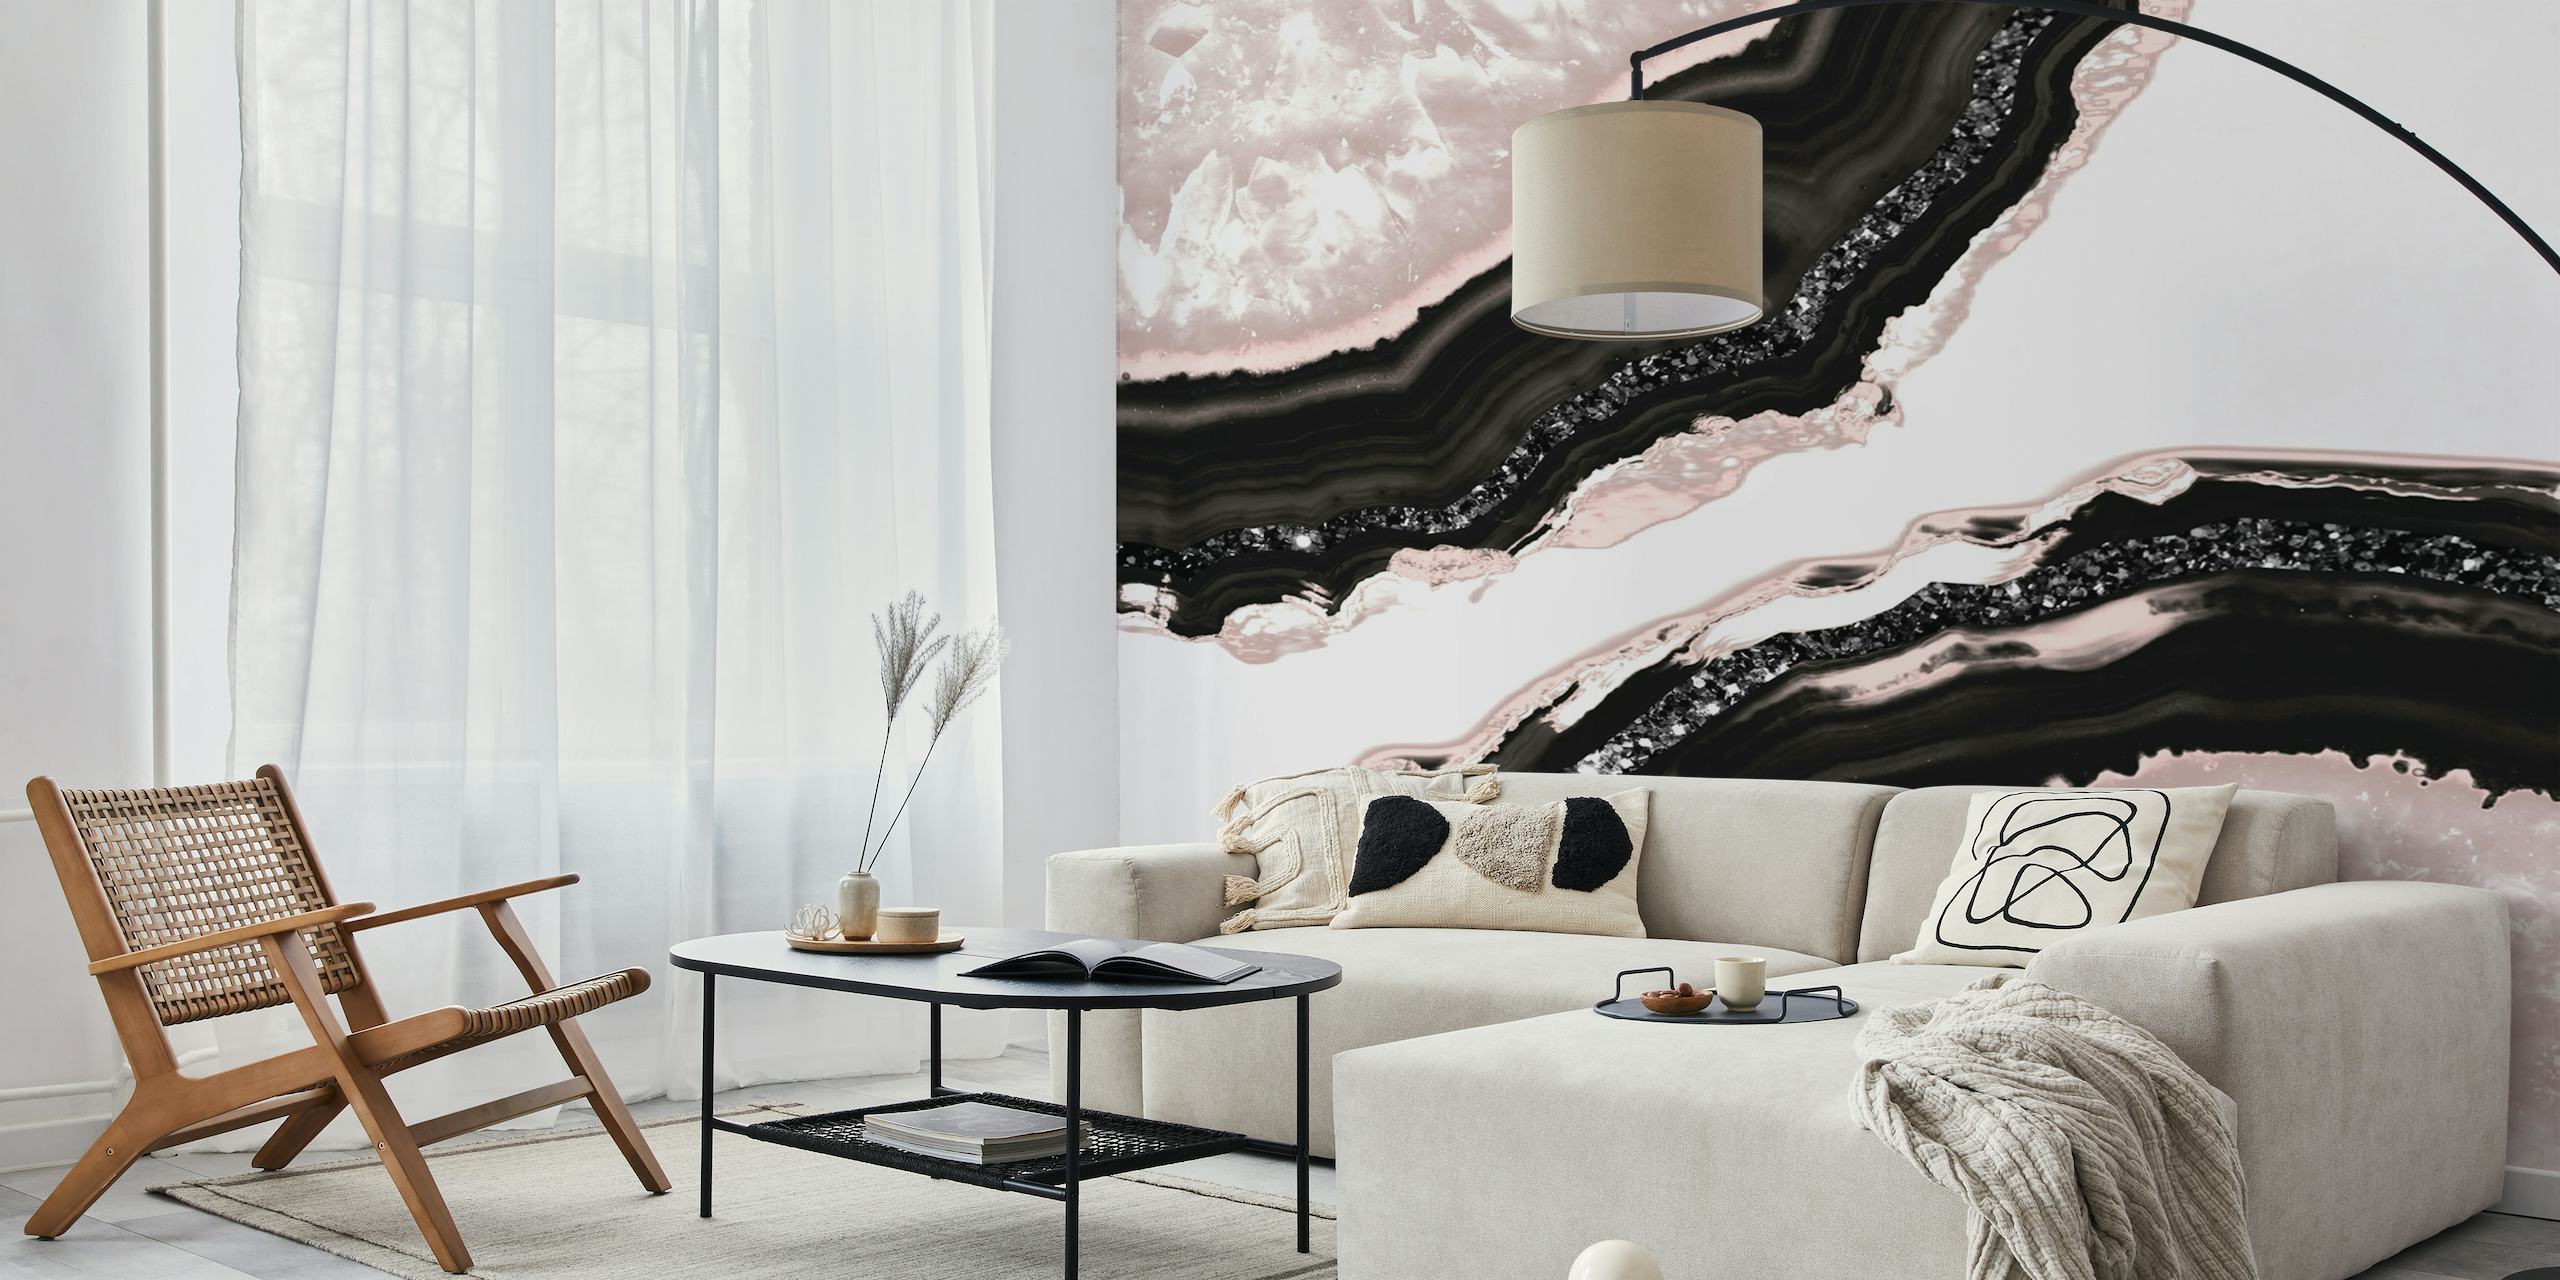 Elegante murale ispirato all'agata con motivi neri, bianchi e rosa tenue e accenti glitterati